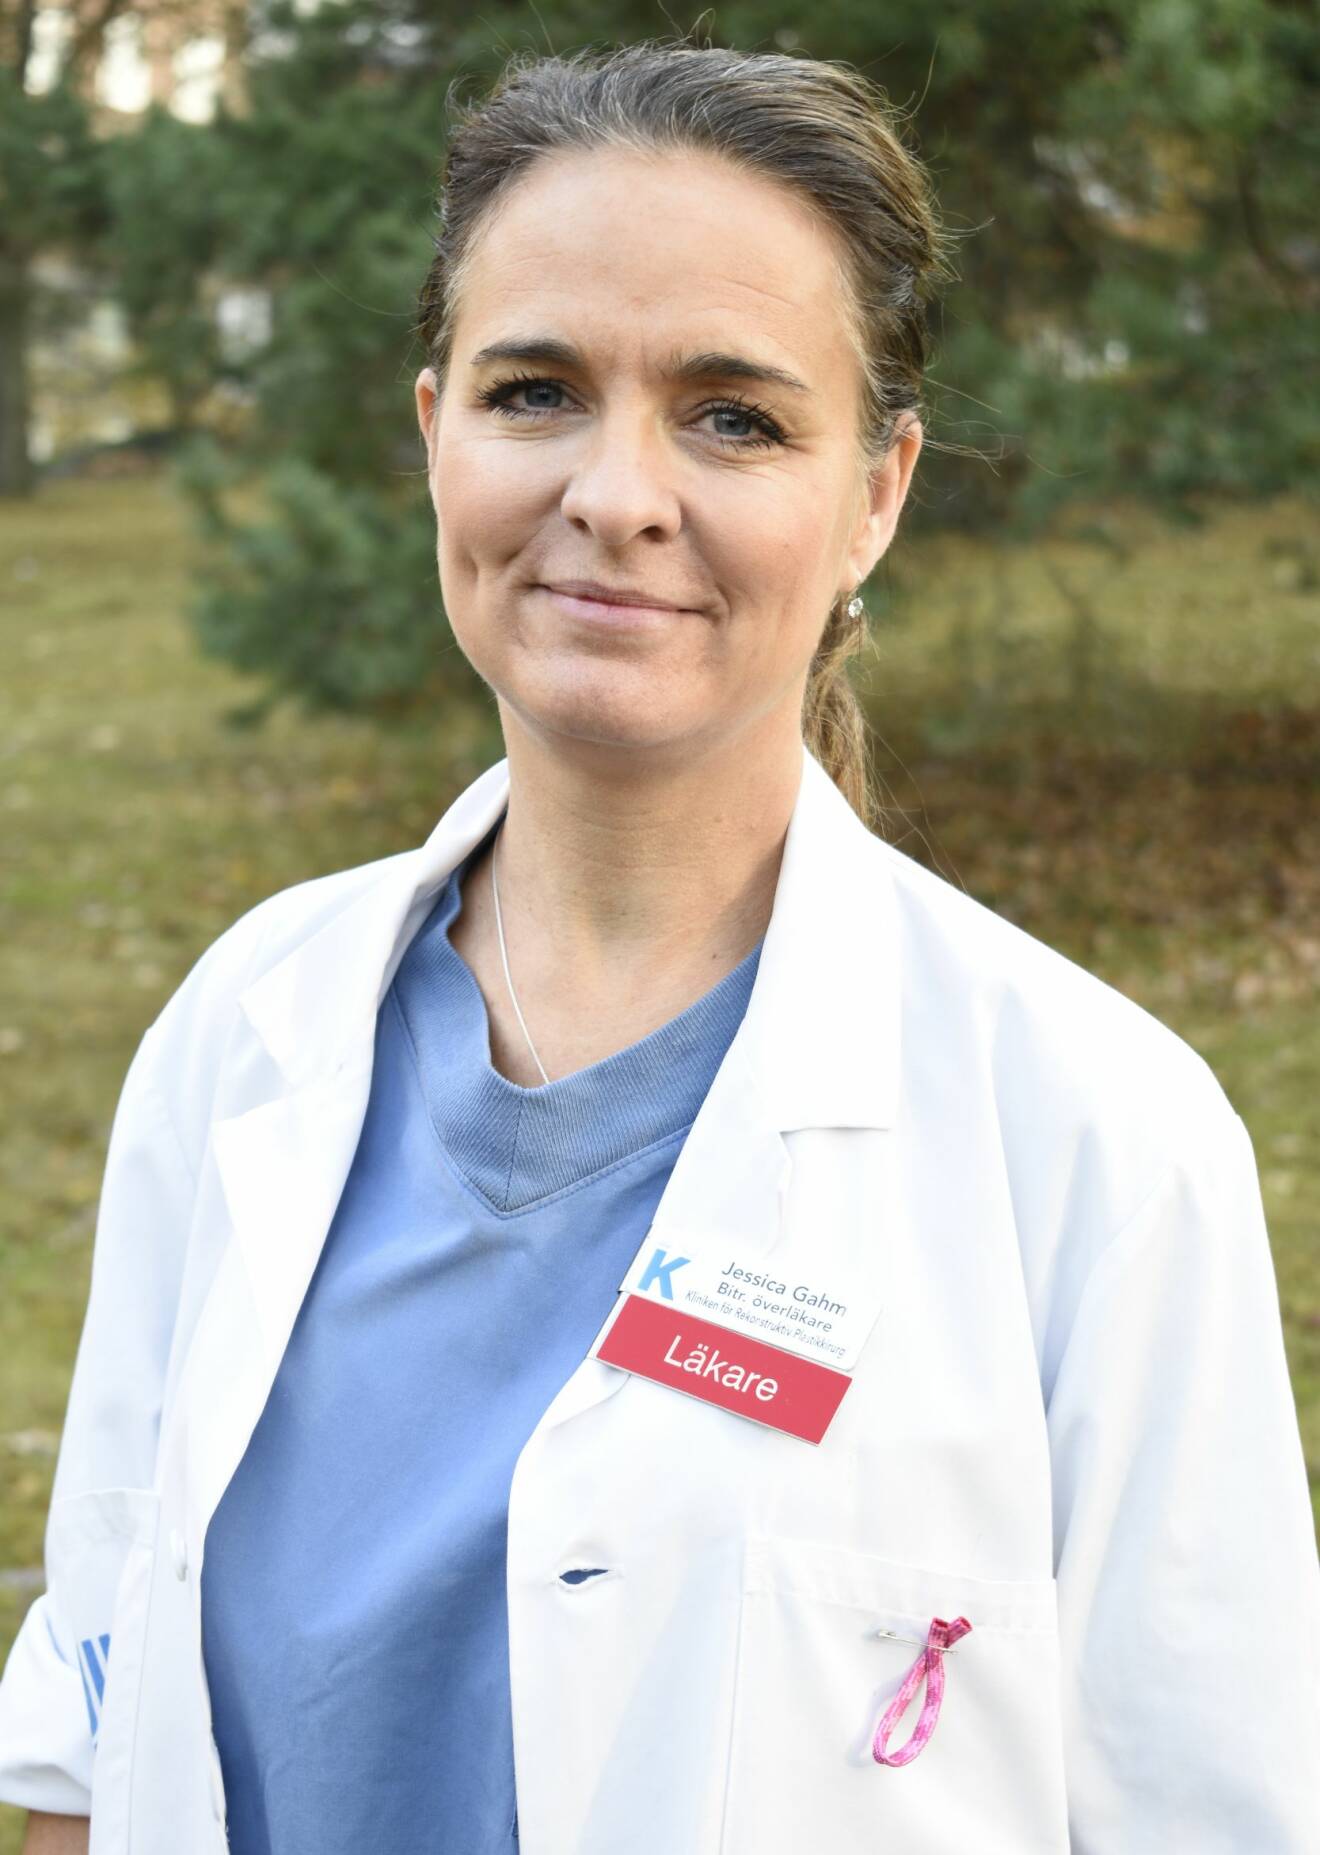 Jessica Gahm är biträdande överläkare vid Karolinska universitetssjukhuset i Stockholm.